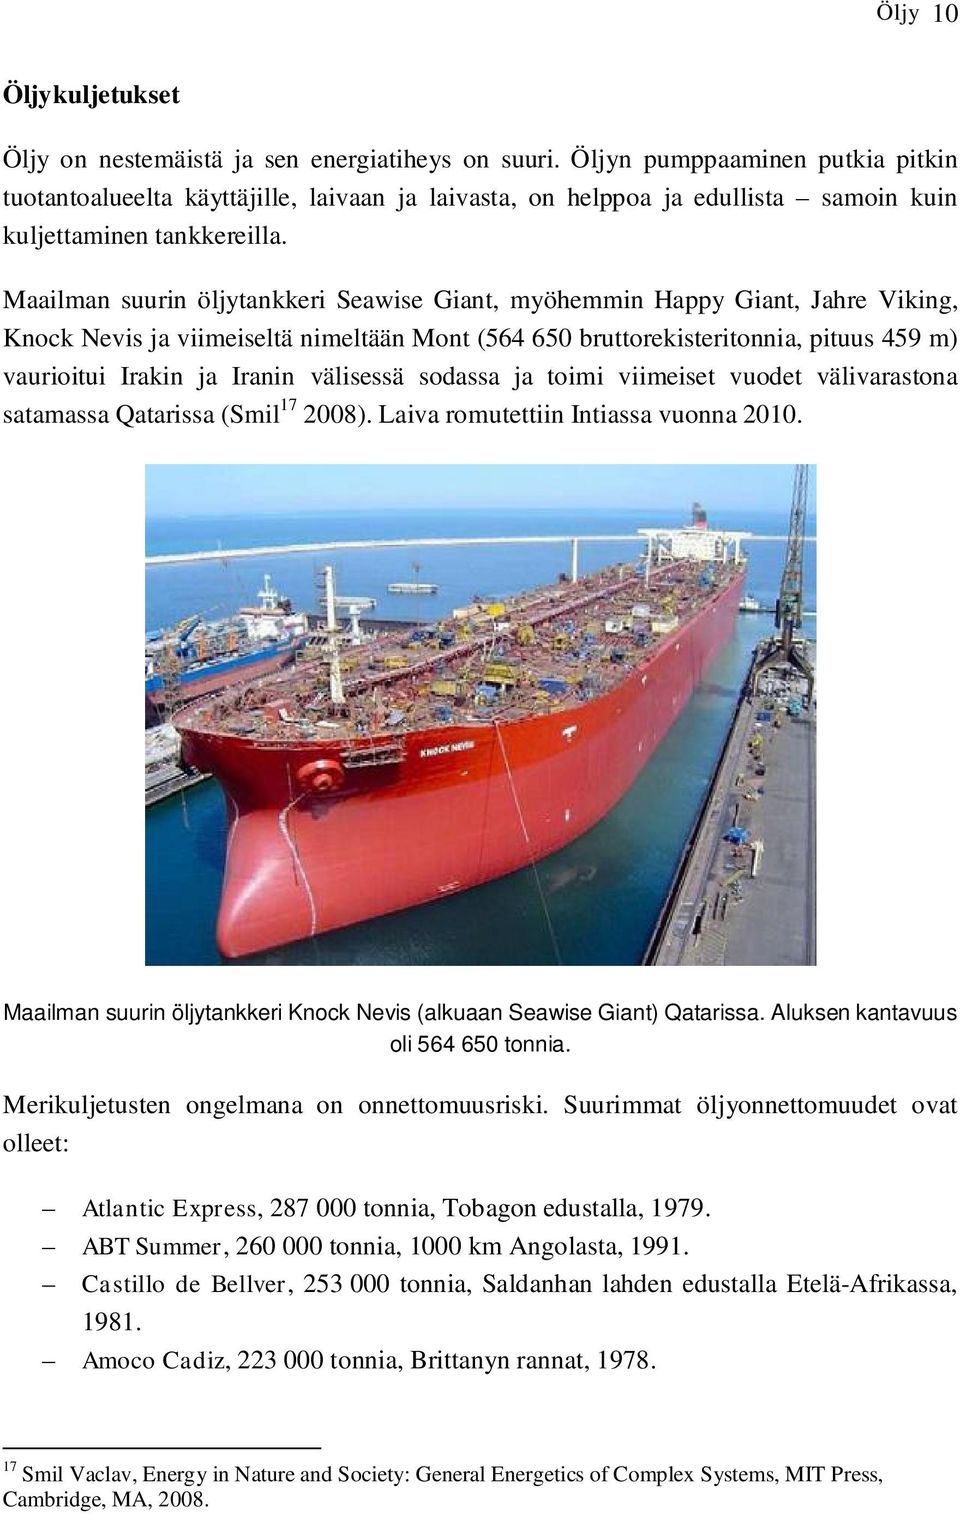 Maailman suurin öljytankkeri Seawise Giant, myöhemmin Happy Giant, Jahre Viking, Knock Nevis ja viimeiseltä nimeltään Mont (564 650 bruttorekisteritonnia, pituus 459 m) vaurioitui Irakin ja Iranin